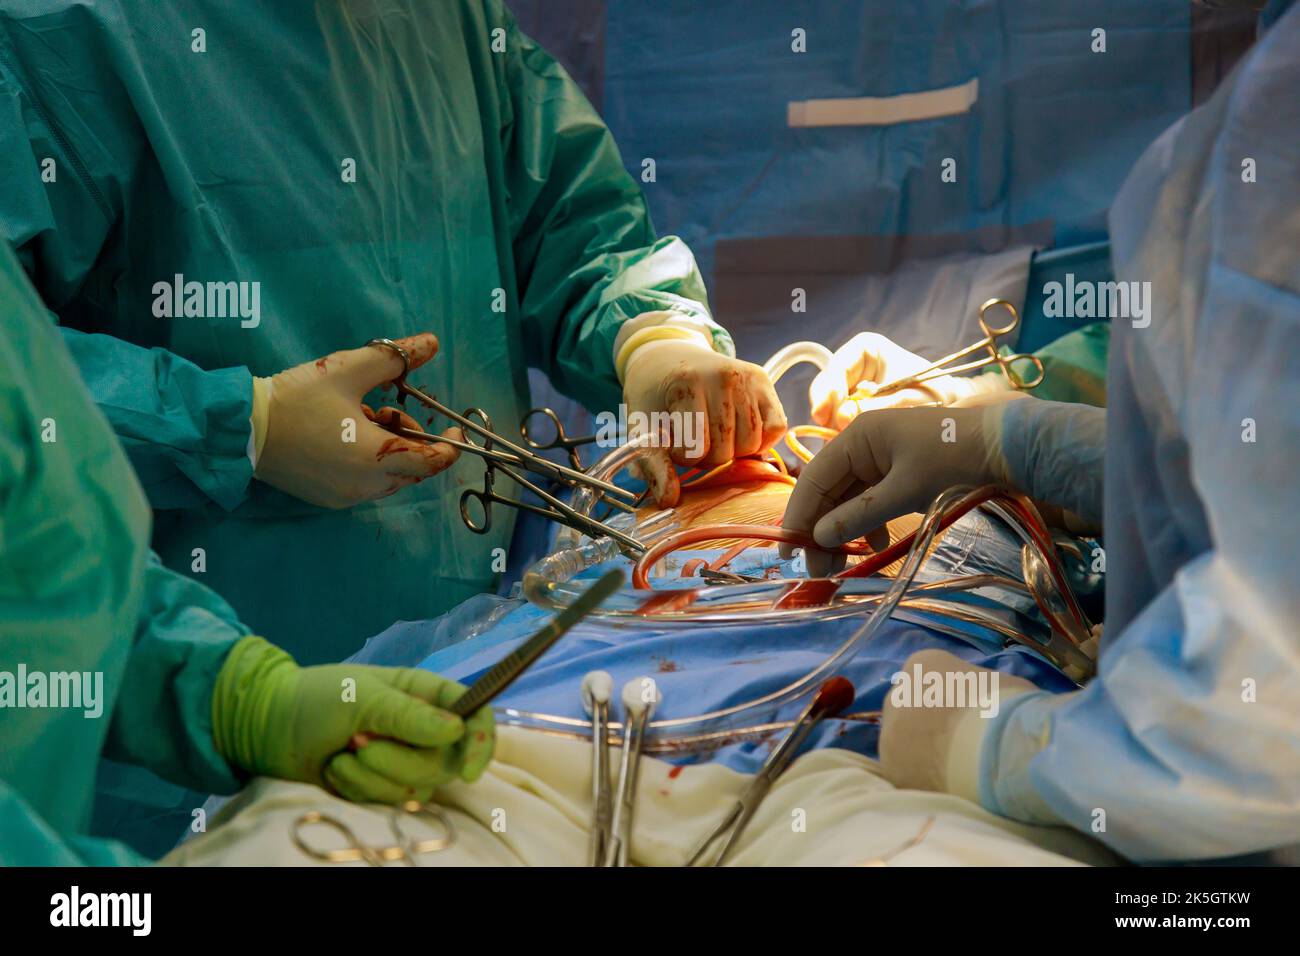 Procedura di bypass coronarico innesto CABG per l'operazione un cuore a causa di malattia coronarica in una sala operatoria in ospedale Foto Stock